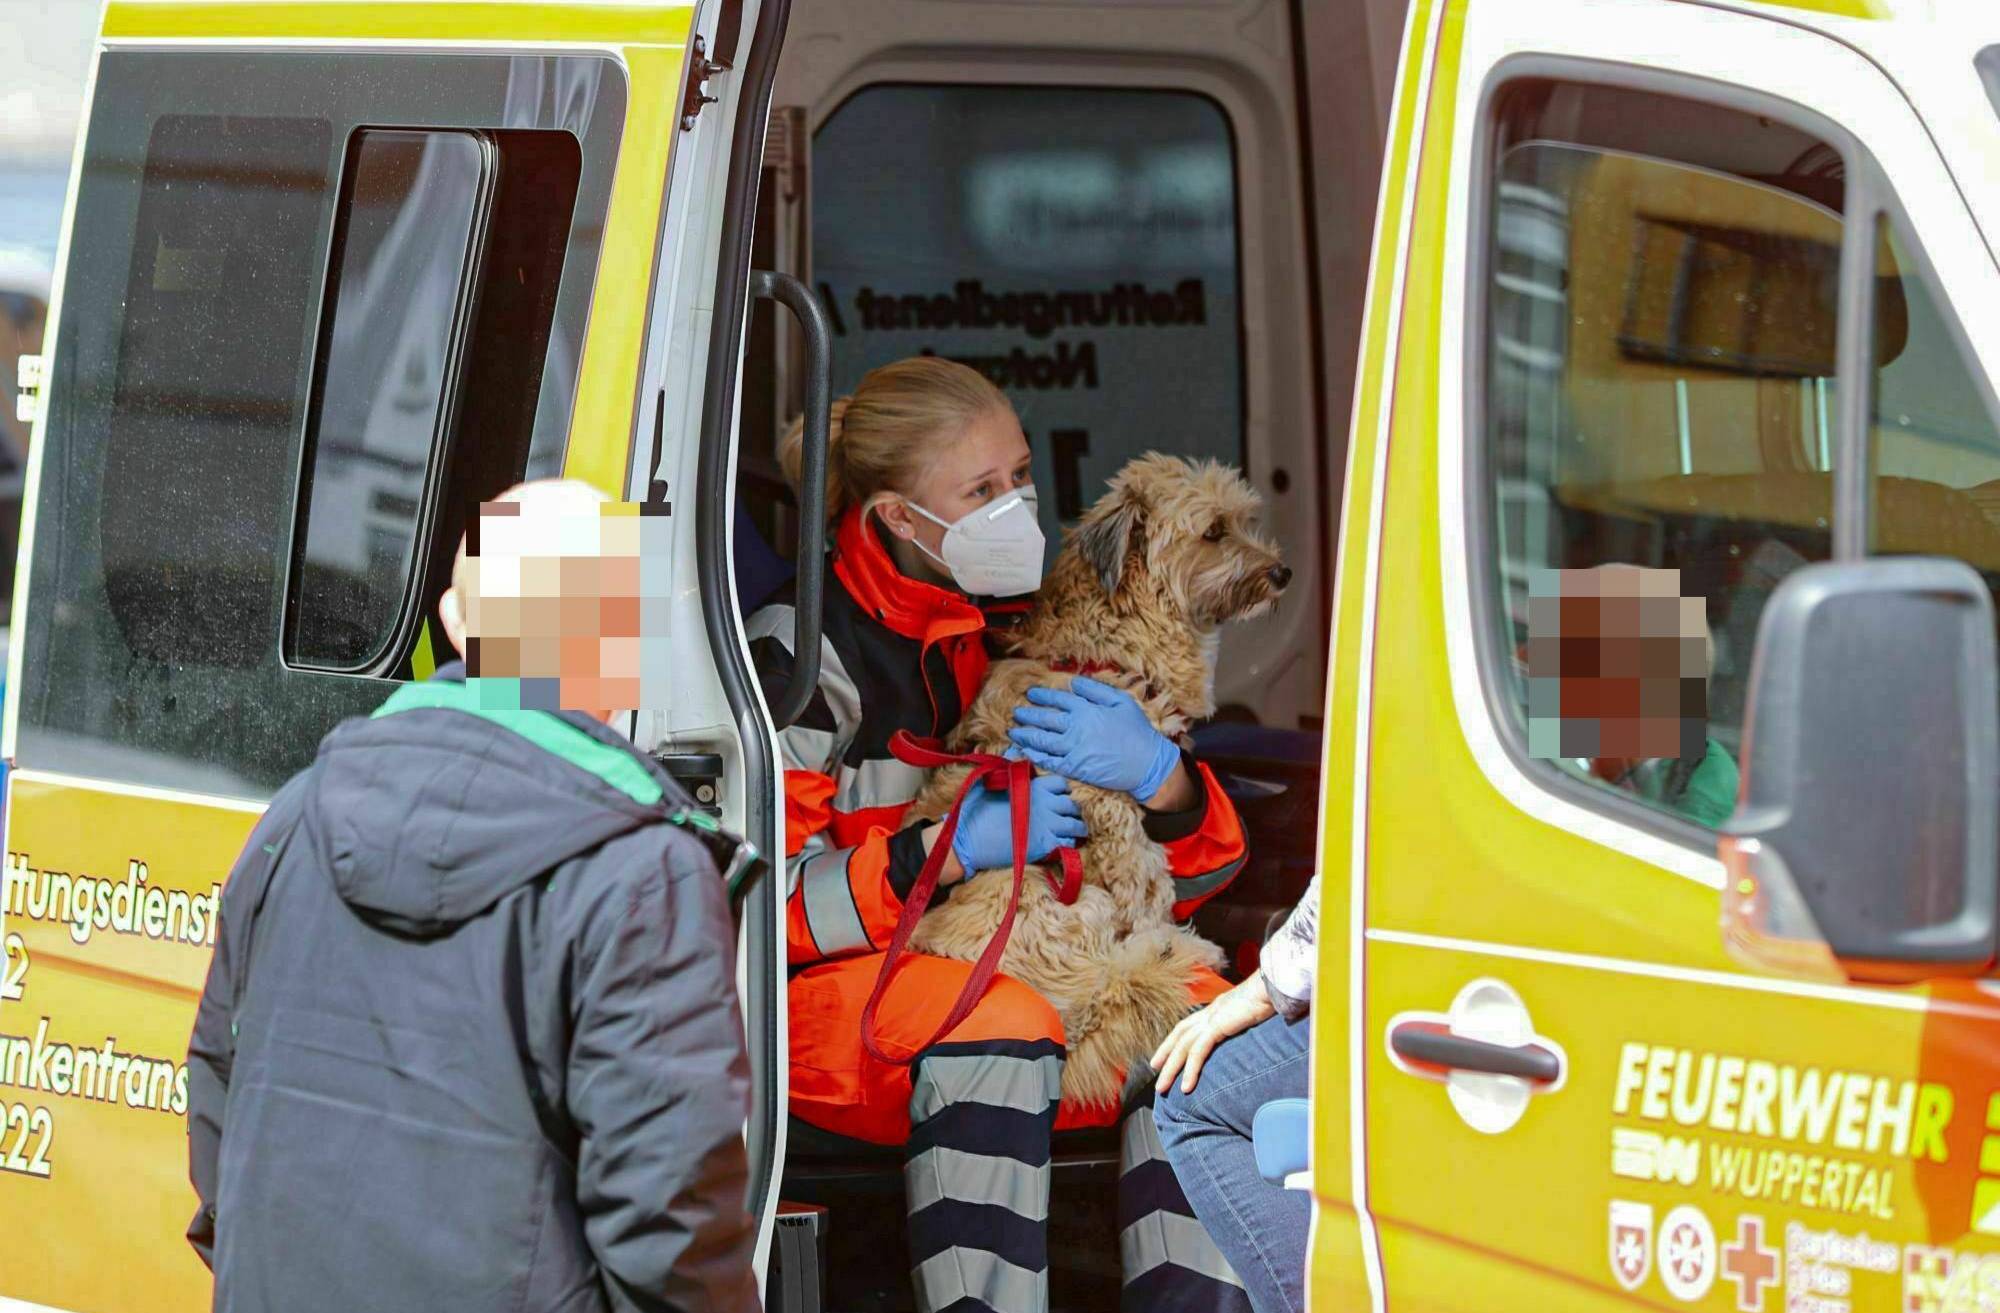 Rettungssanitäterin mit großem Herz für Hund